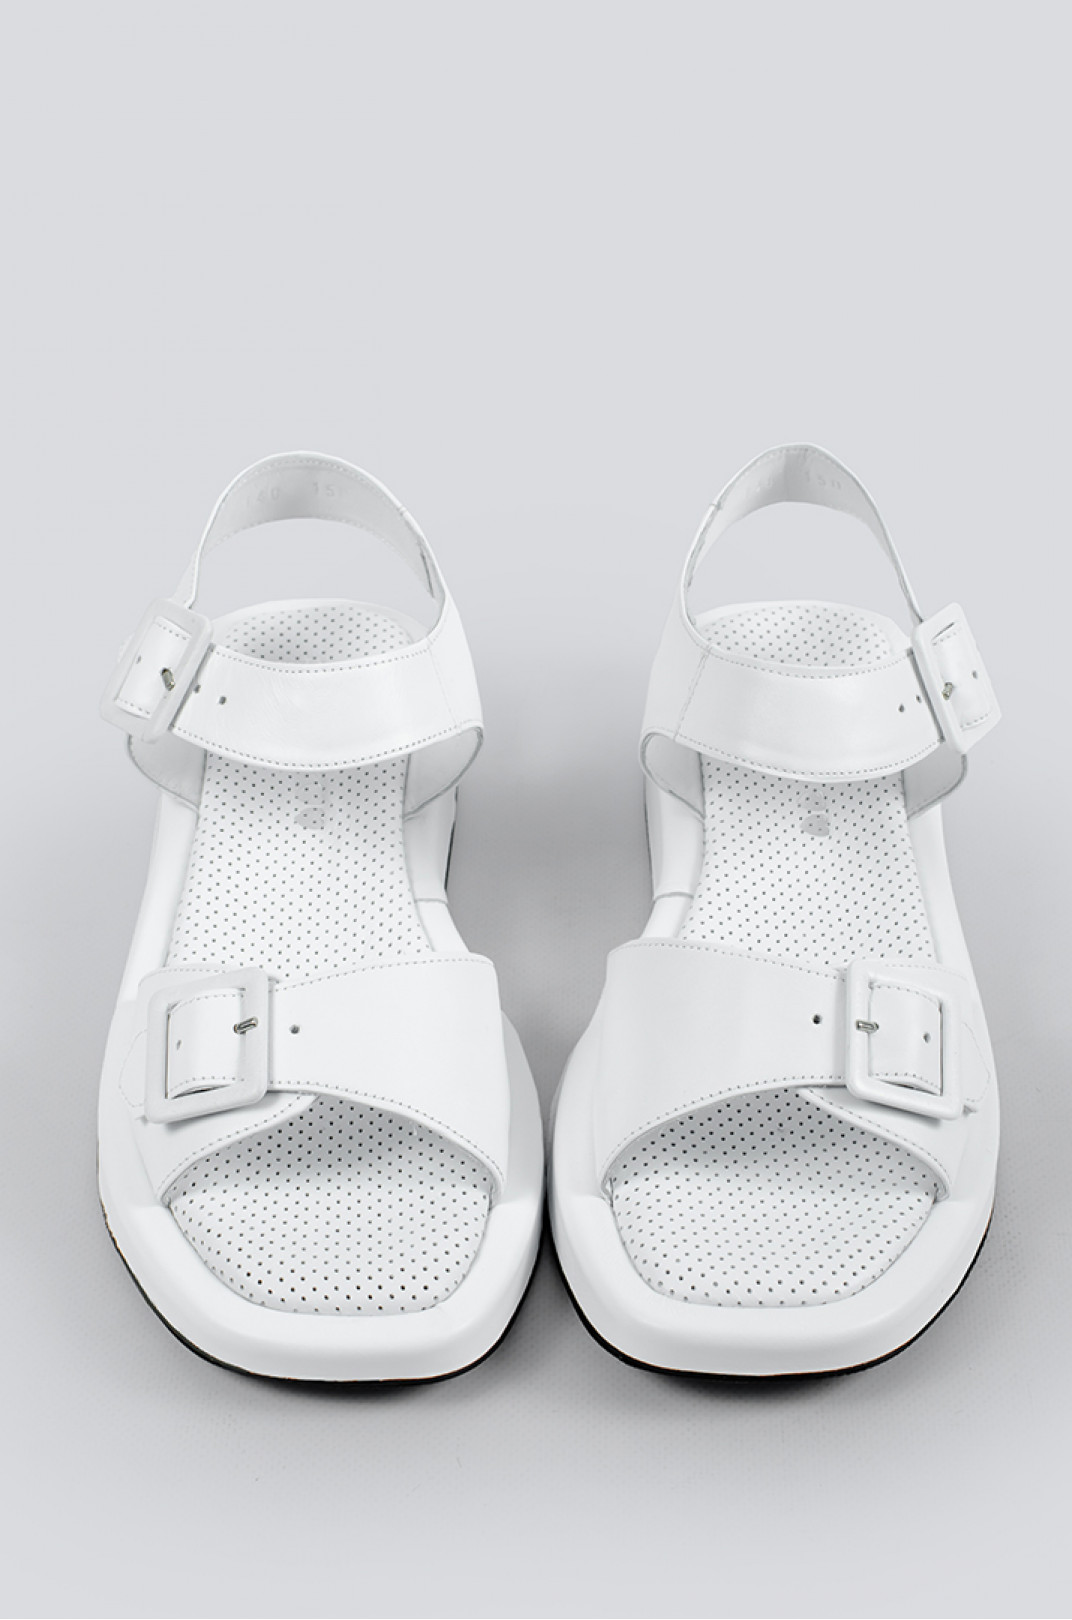 Белые сандали с перфорированной стелькой больших размеров